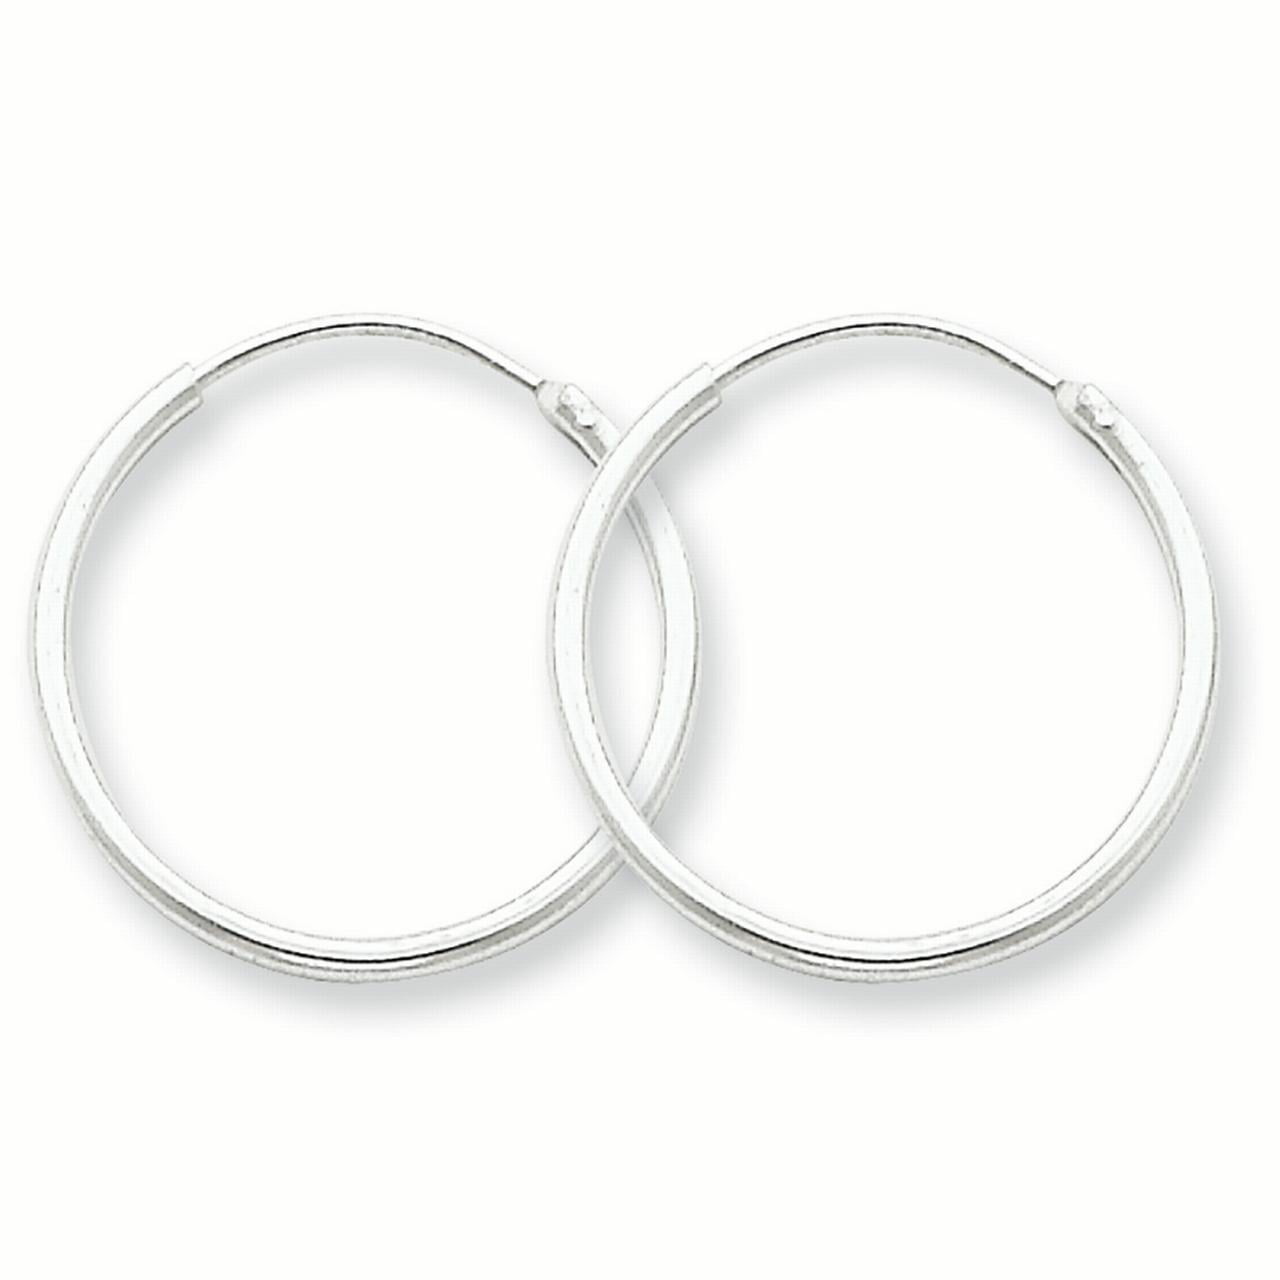 Huggie Hoop Earrings Clear Cubic Zirconia Solid Sterling Silver 925 Dim 20 x 20 